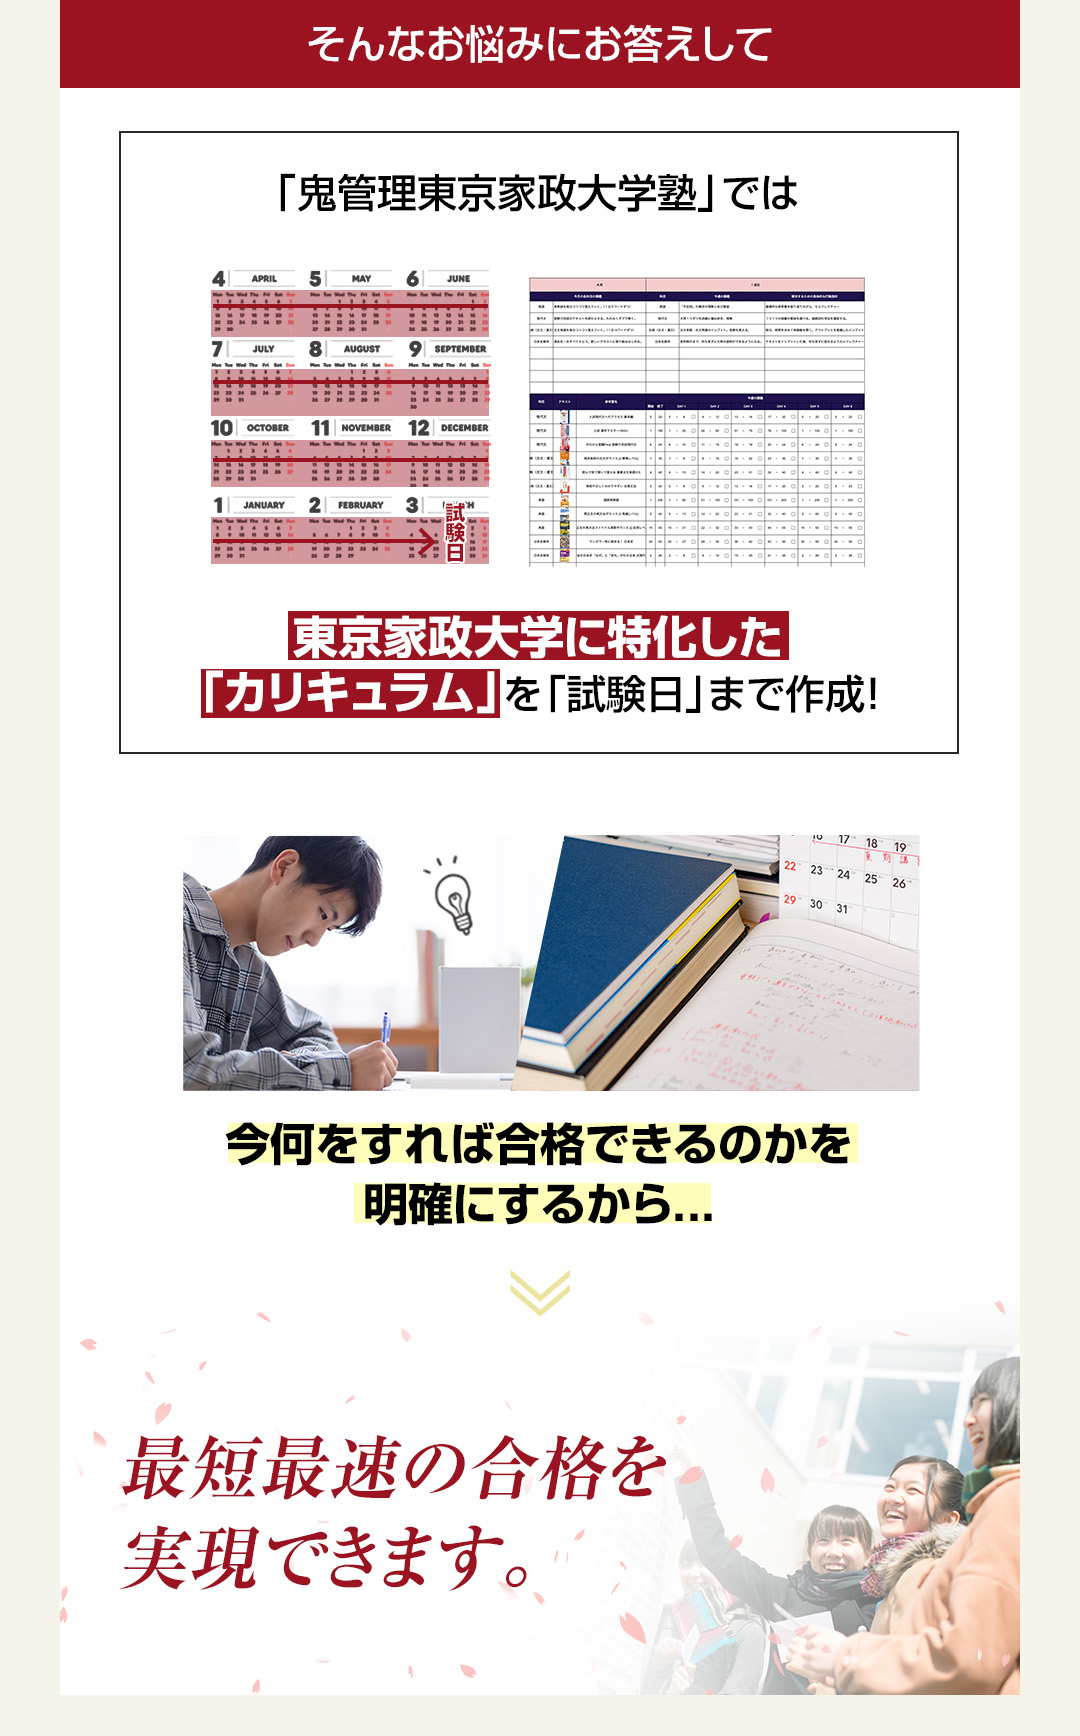 「鬼管理東京家政大学塾」では東京家政大学に特化した「カリキュラム」を「試験日」まで作成